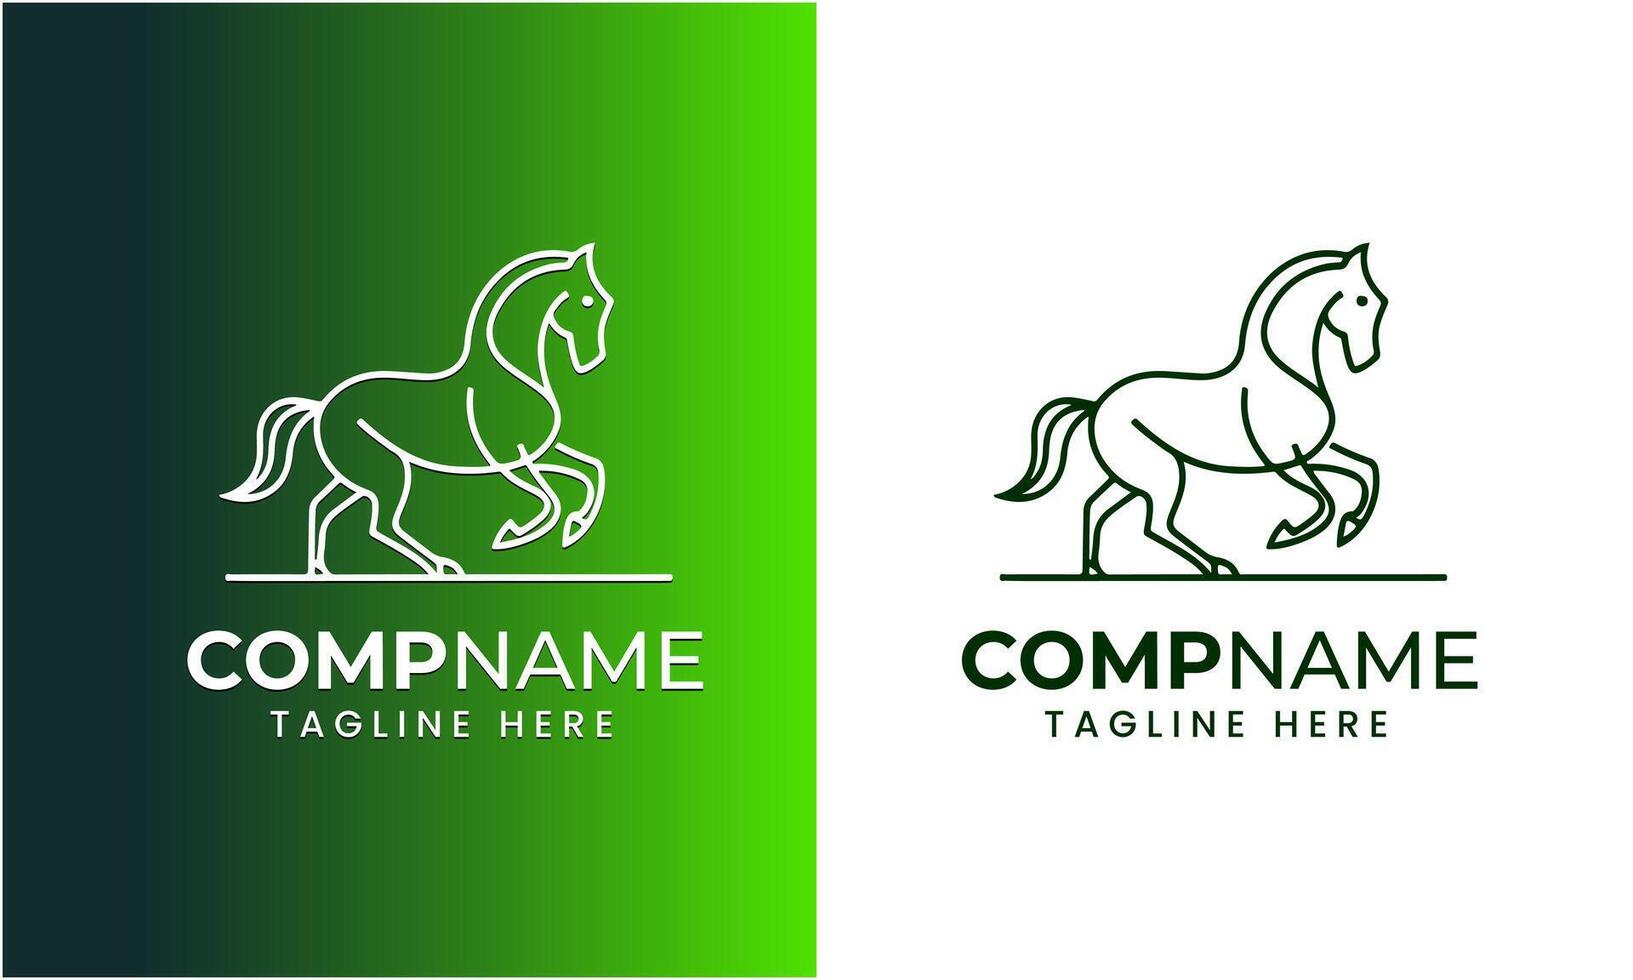 AI generated Horse minimalist modern unique logo icon symbol idea vector graphic design template